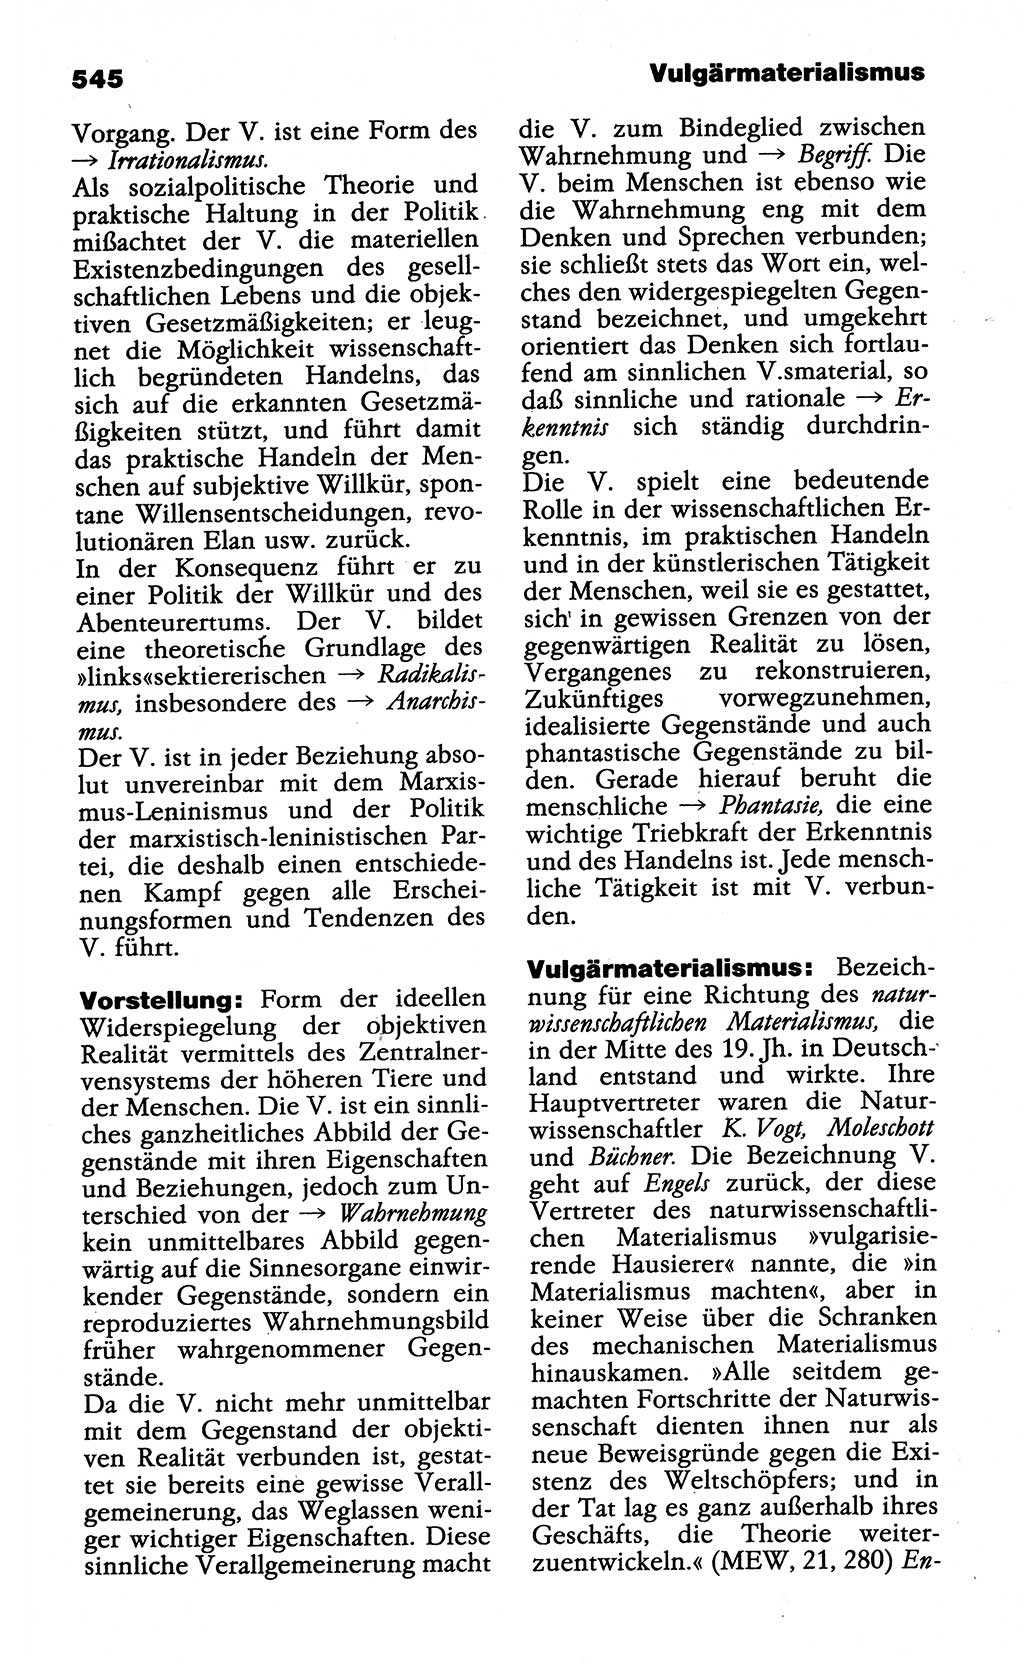 Wörterbuch der marxistisch-leninistischen Philosophie [Deutsche Demokratische Republik (DDR)] 1985, Seite 545 (Wb. ML Phil. DDR 1985, S. 545)